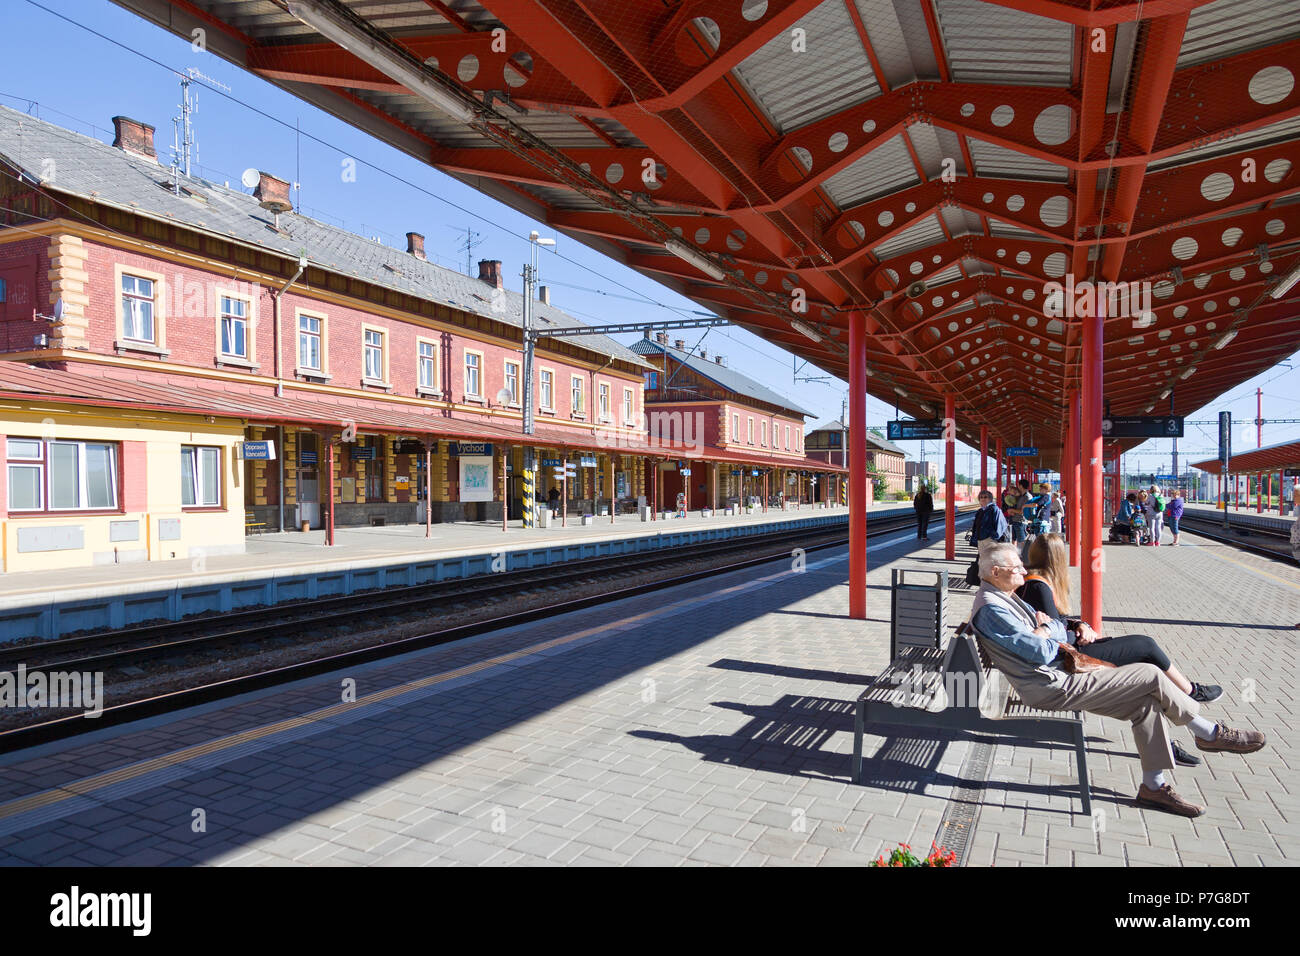 Vlakové nádraží, Veselí nad Lužnicí, Česká republika / estación de trenes Veseli nad Luznici, República Checa Foto de stock